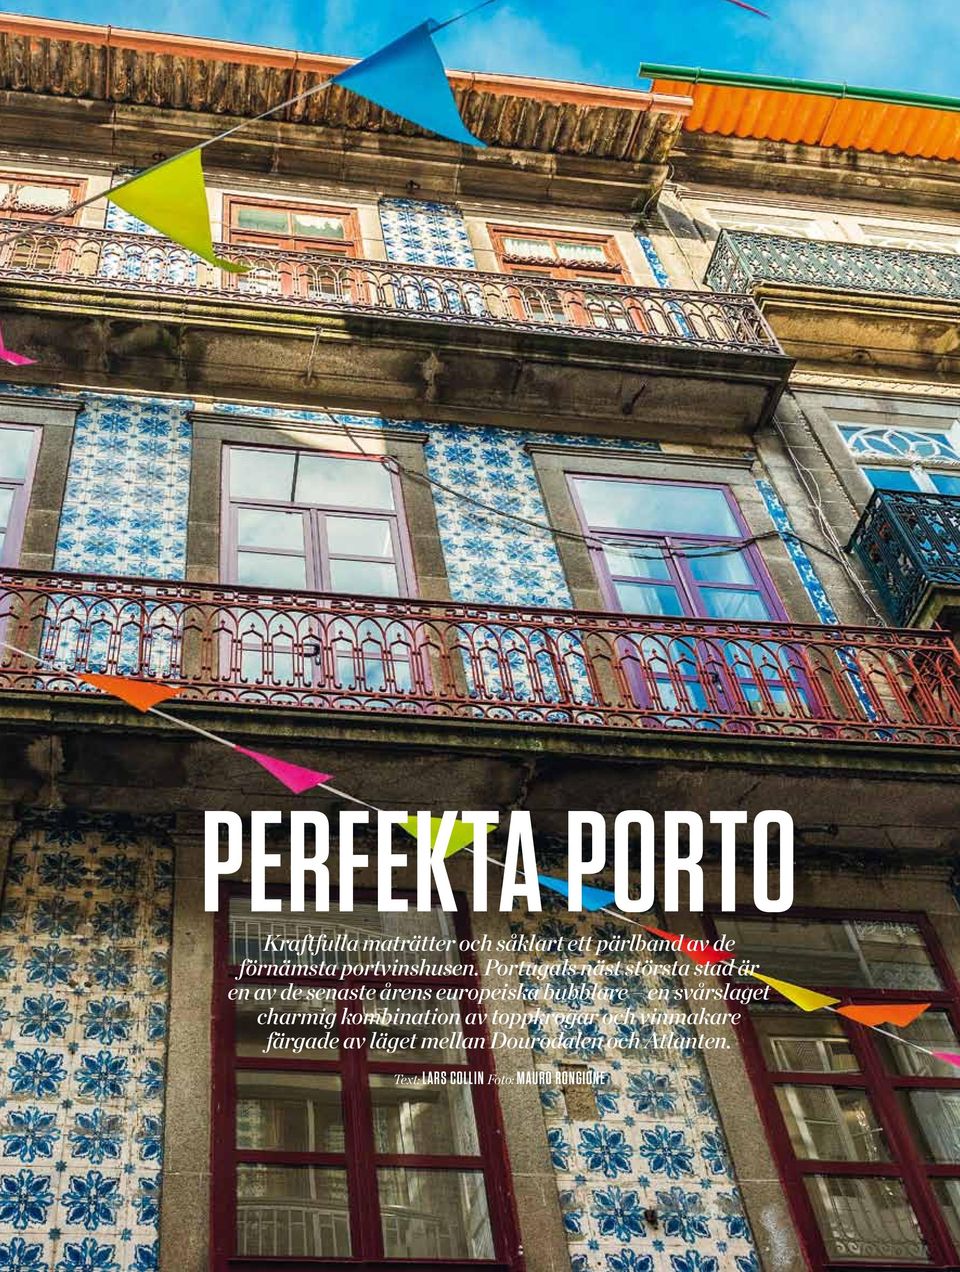 Portugals näst största stad är en av de senaste årens europeiska bubblare